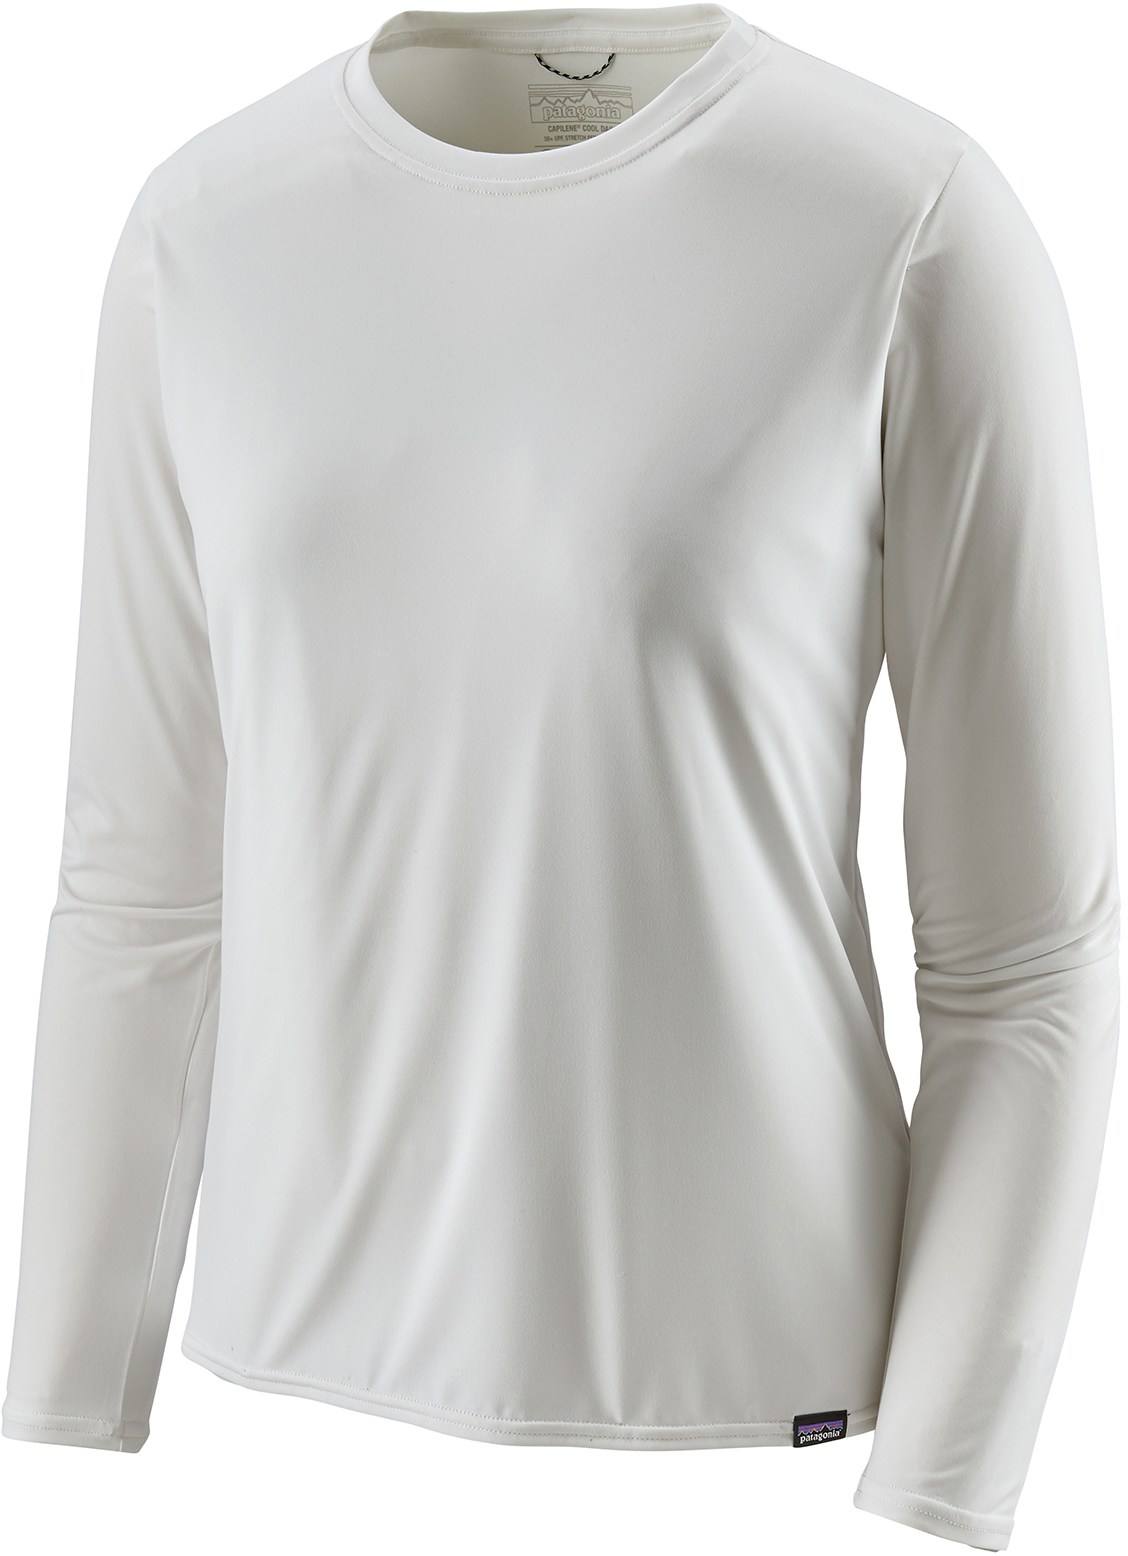 Повседневная рубашка Capilene Cool с длинными рукавами — женская Patagonia, белый повседневная рубашка с длинными рукавами capilene cool – мужская patagonia белый